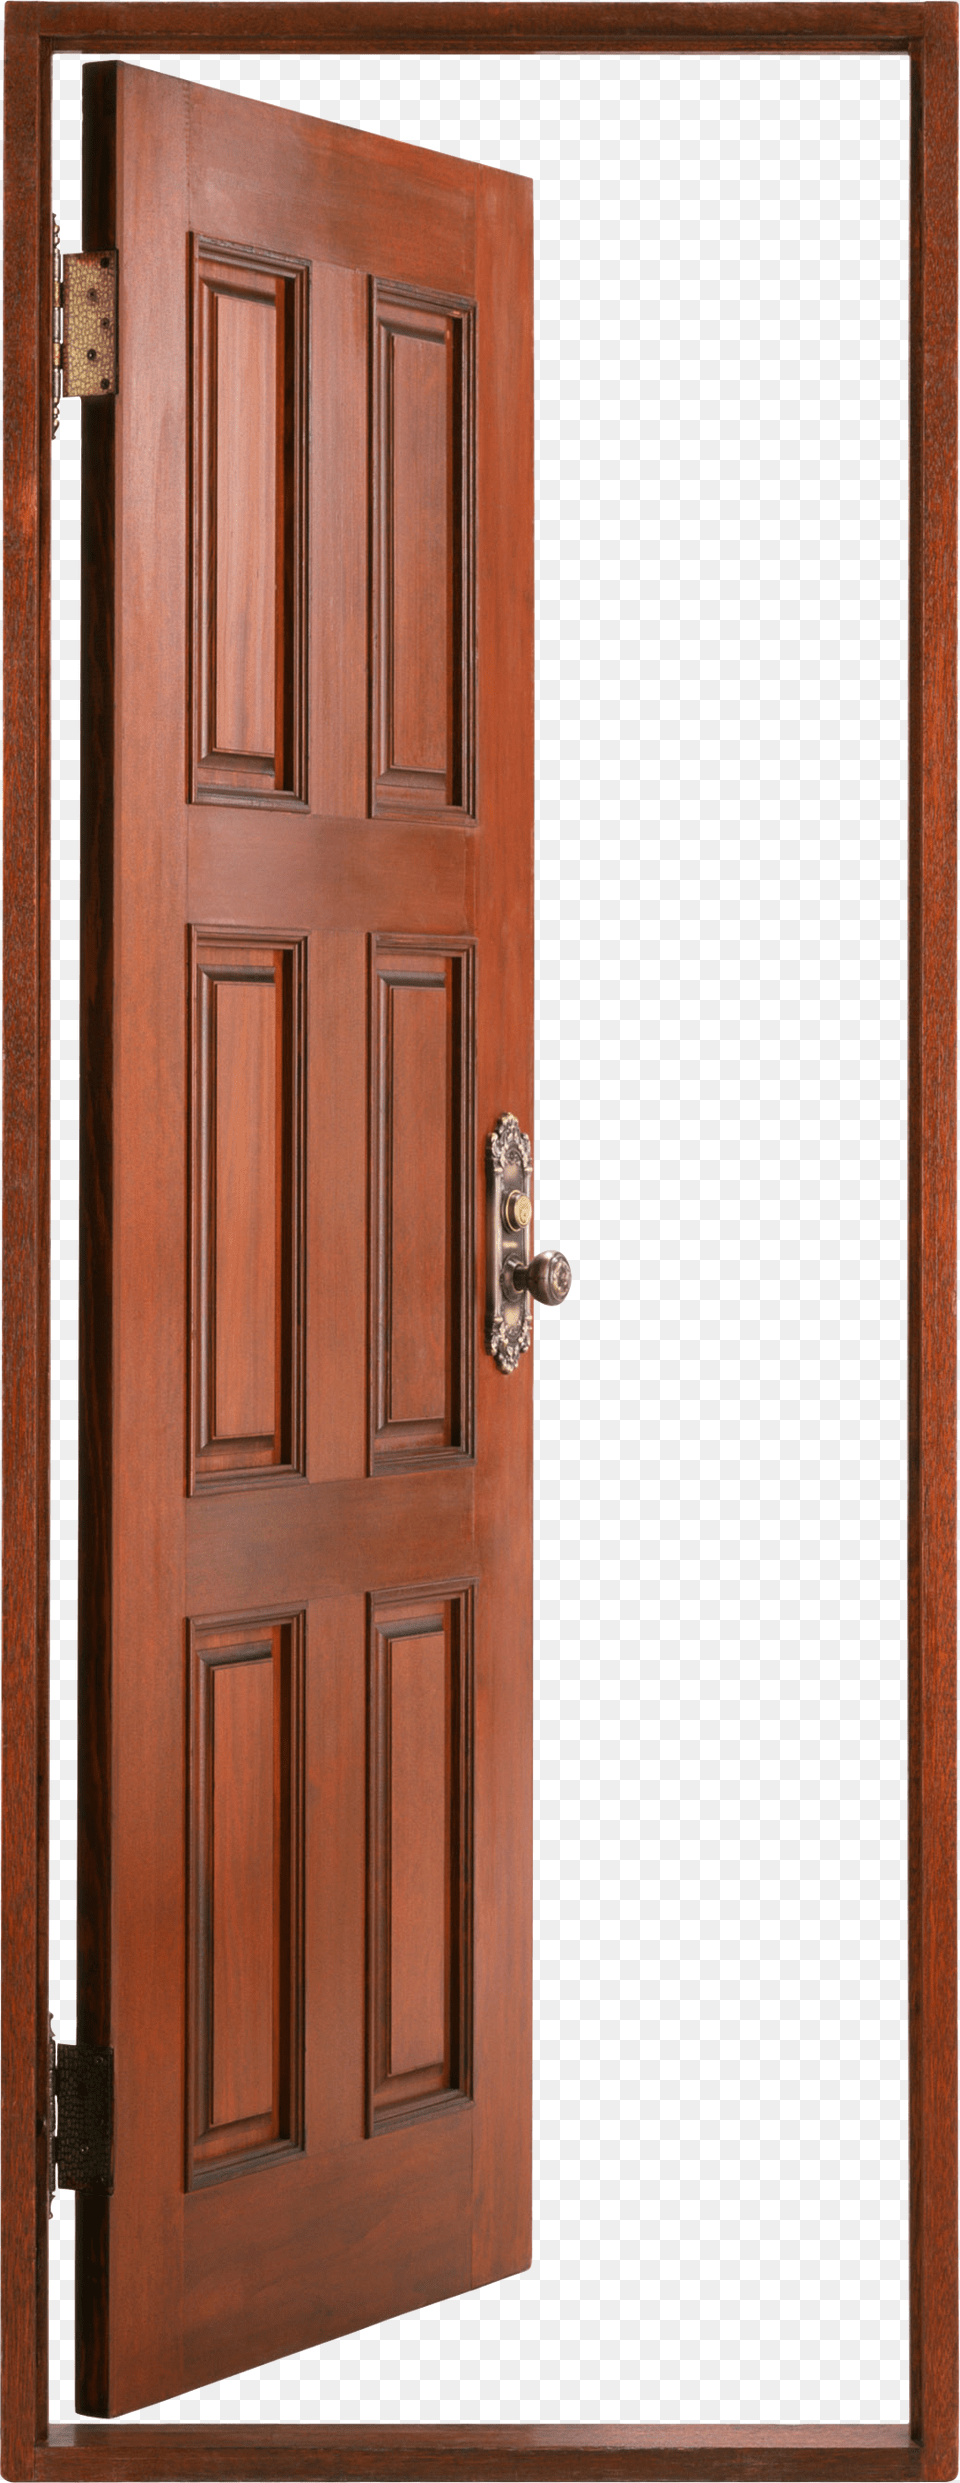 Open Wood Door Free Transparent Png